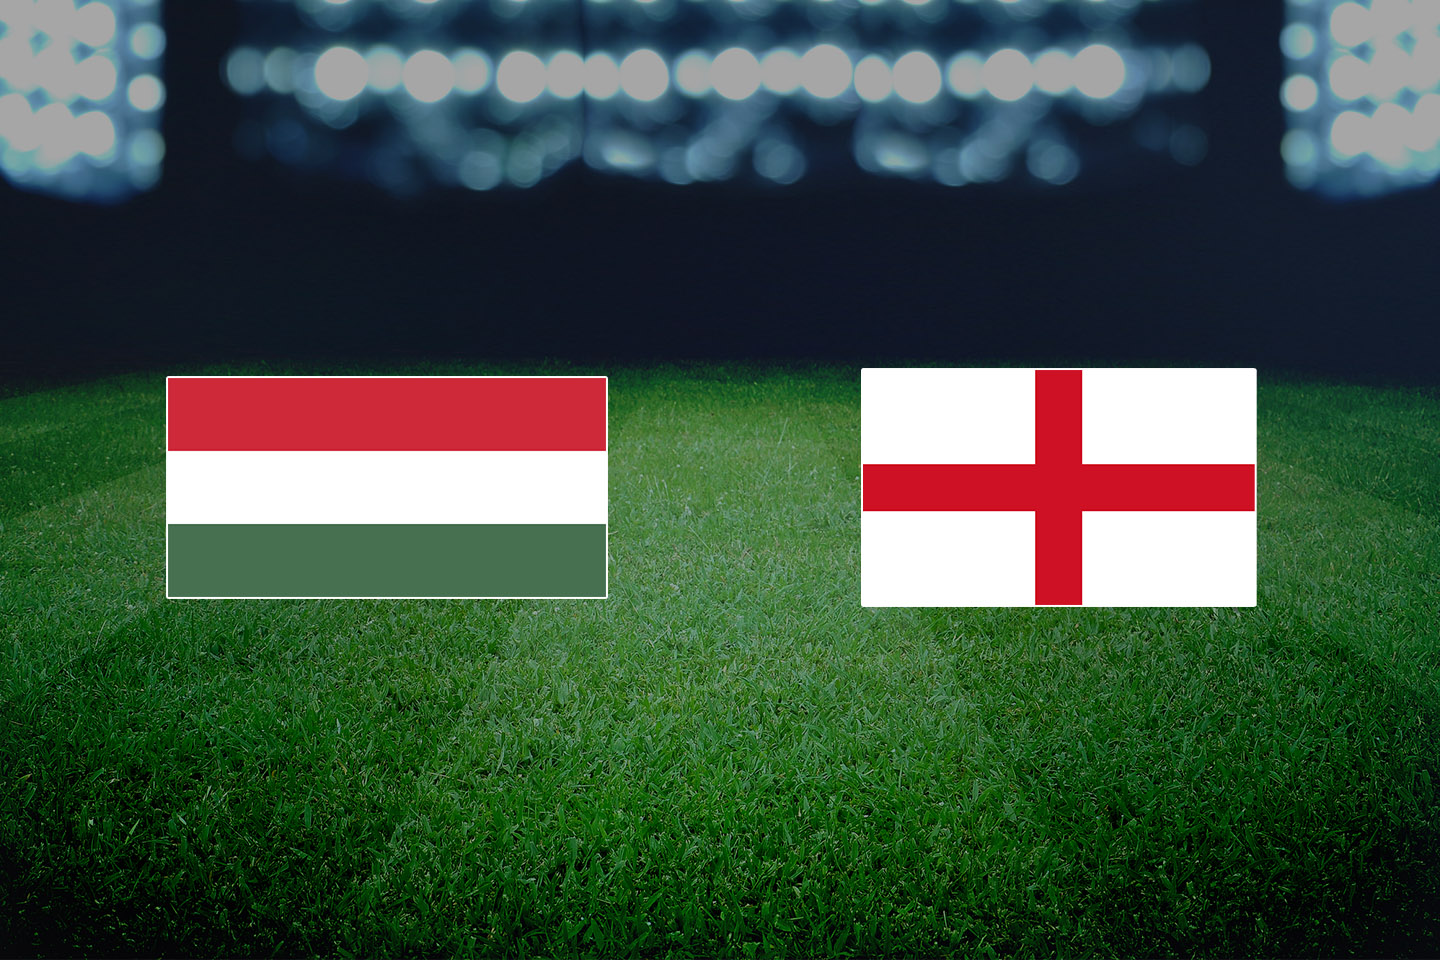 Mađarska vs Engleska